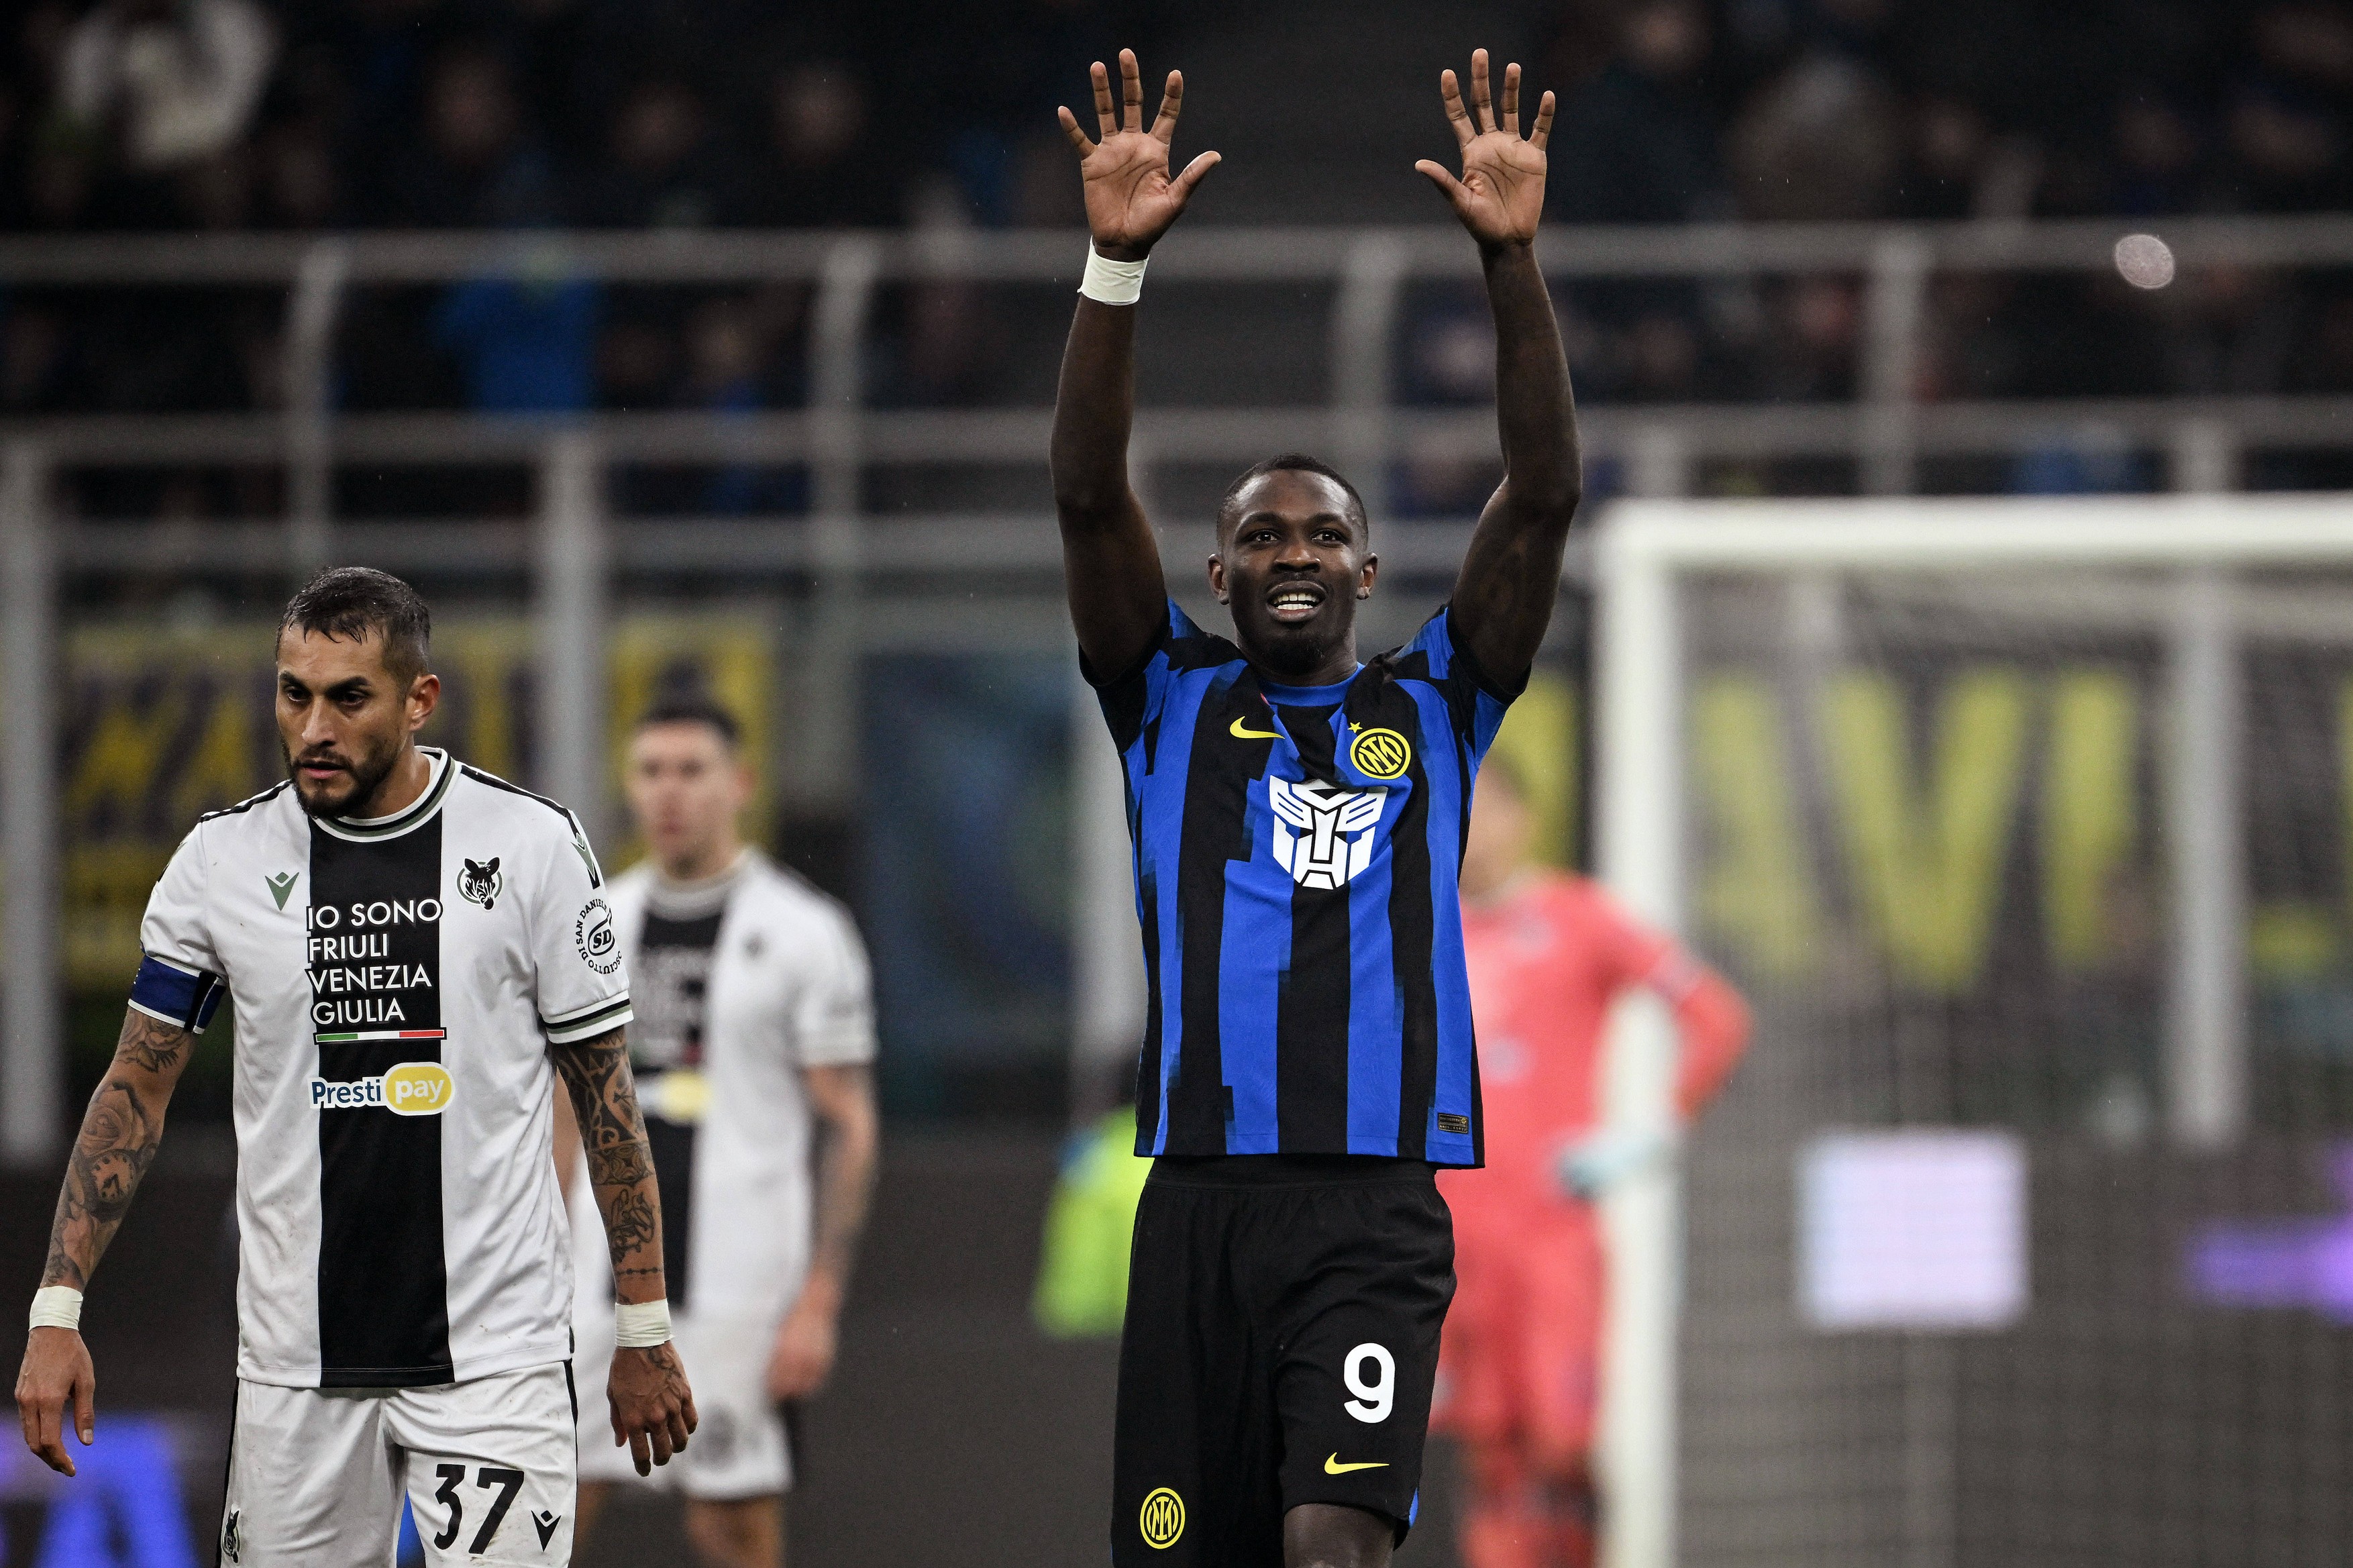 Udinese - Inter Milano 0-0, ACUM pe DGS 2. ”Nerazzurri” se pot distanța la 14 puncte de AC Milan